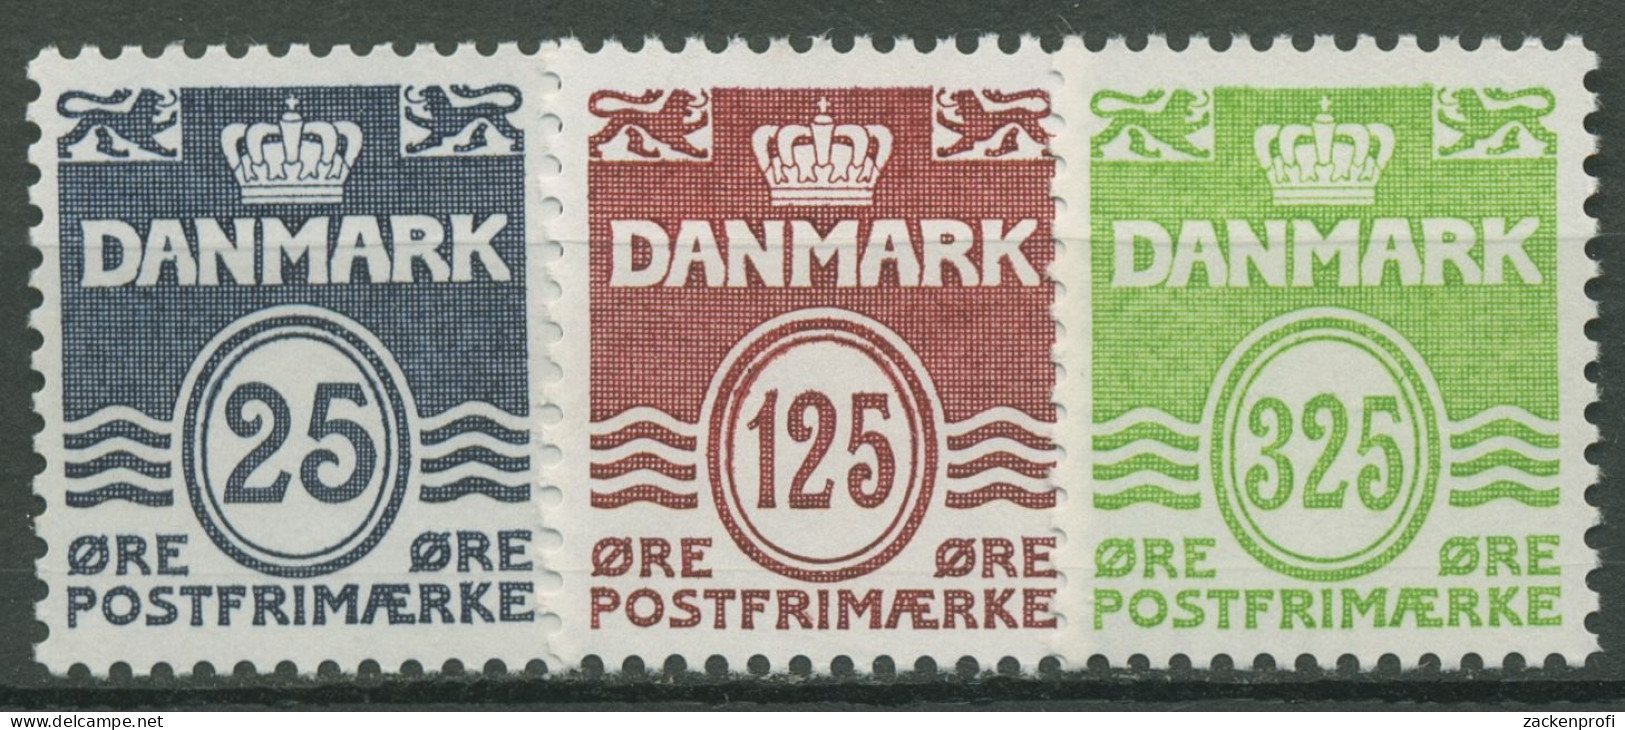 Dänemark 1990 Freimarken Wellenlinien 963/65 Postfrisch - Nuovi